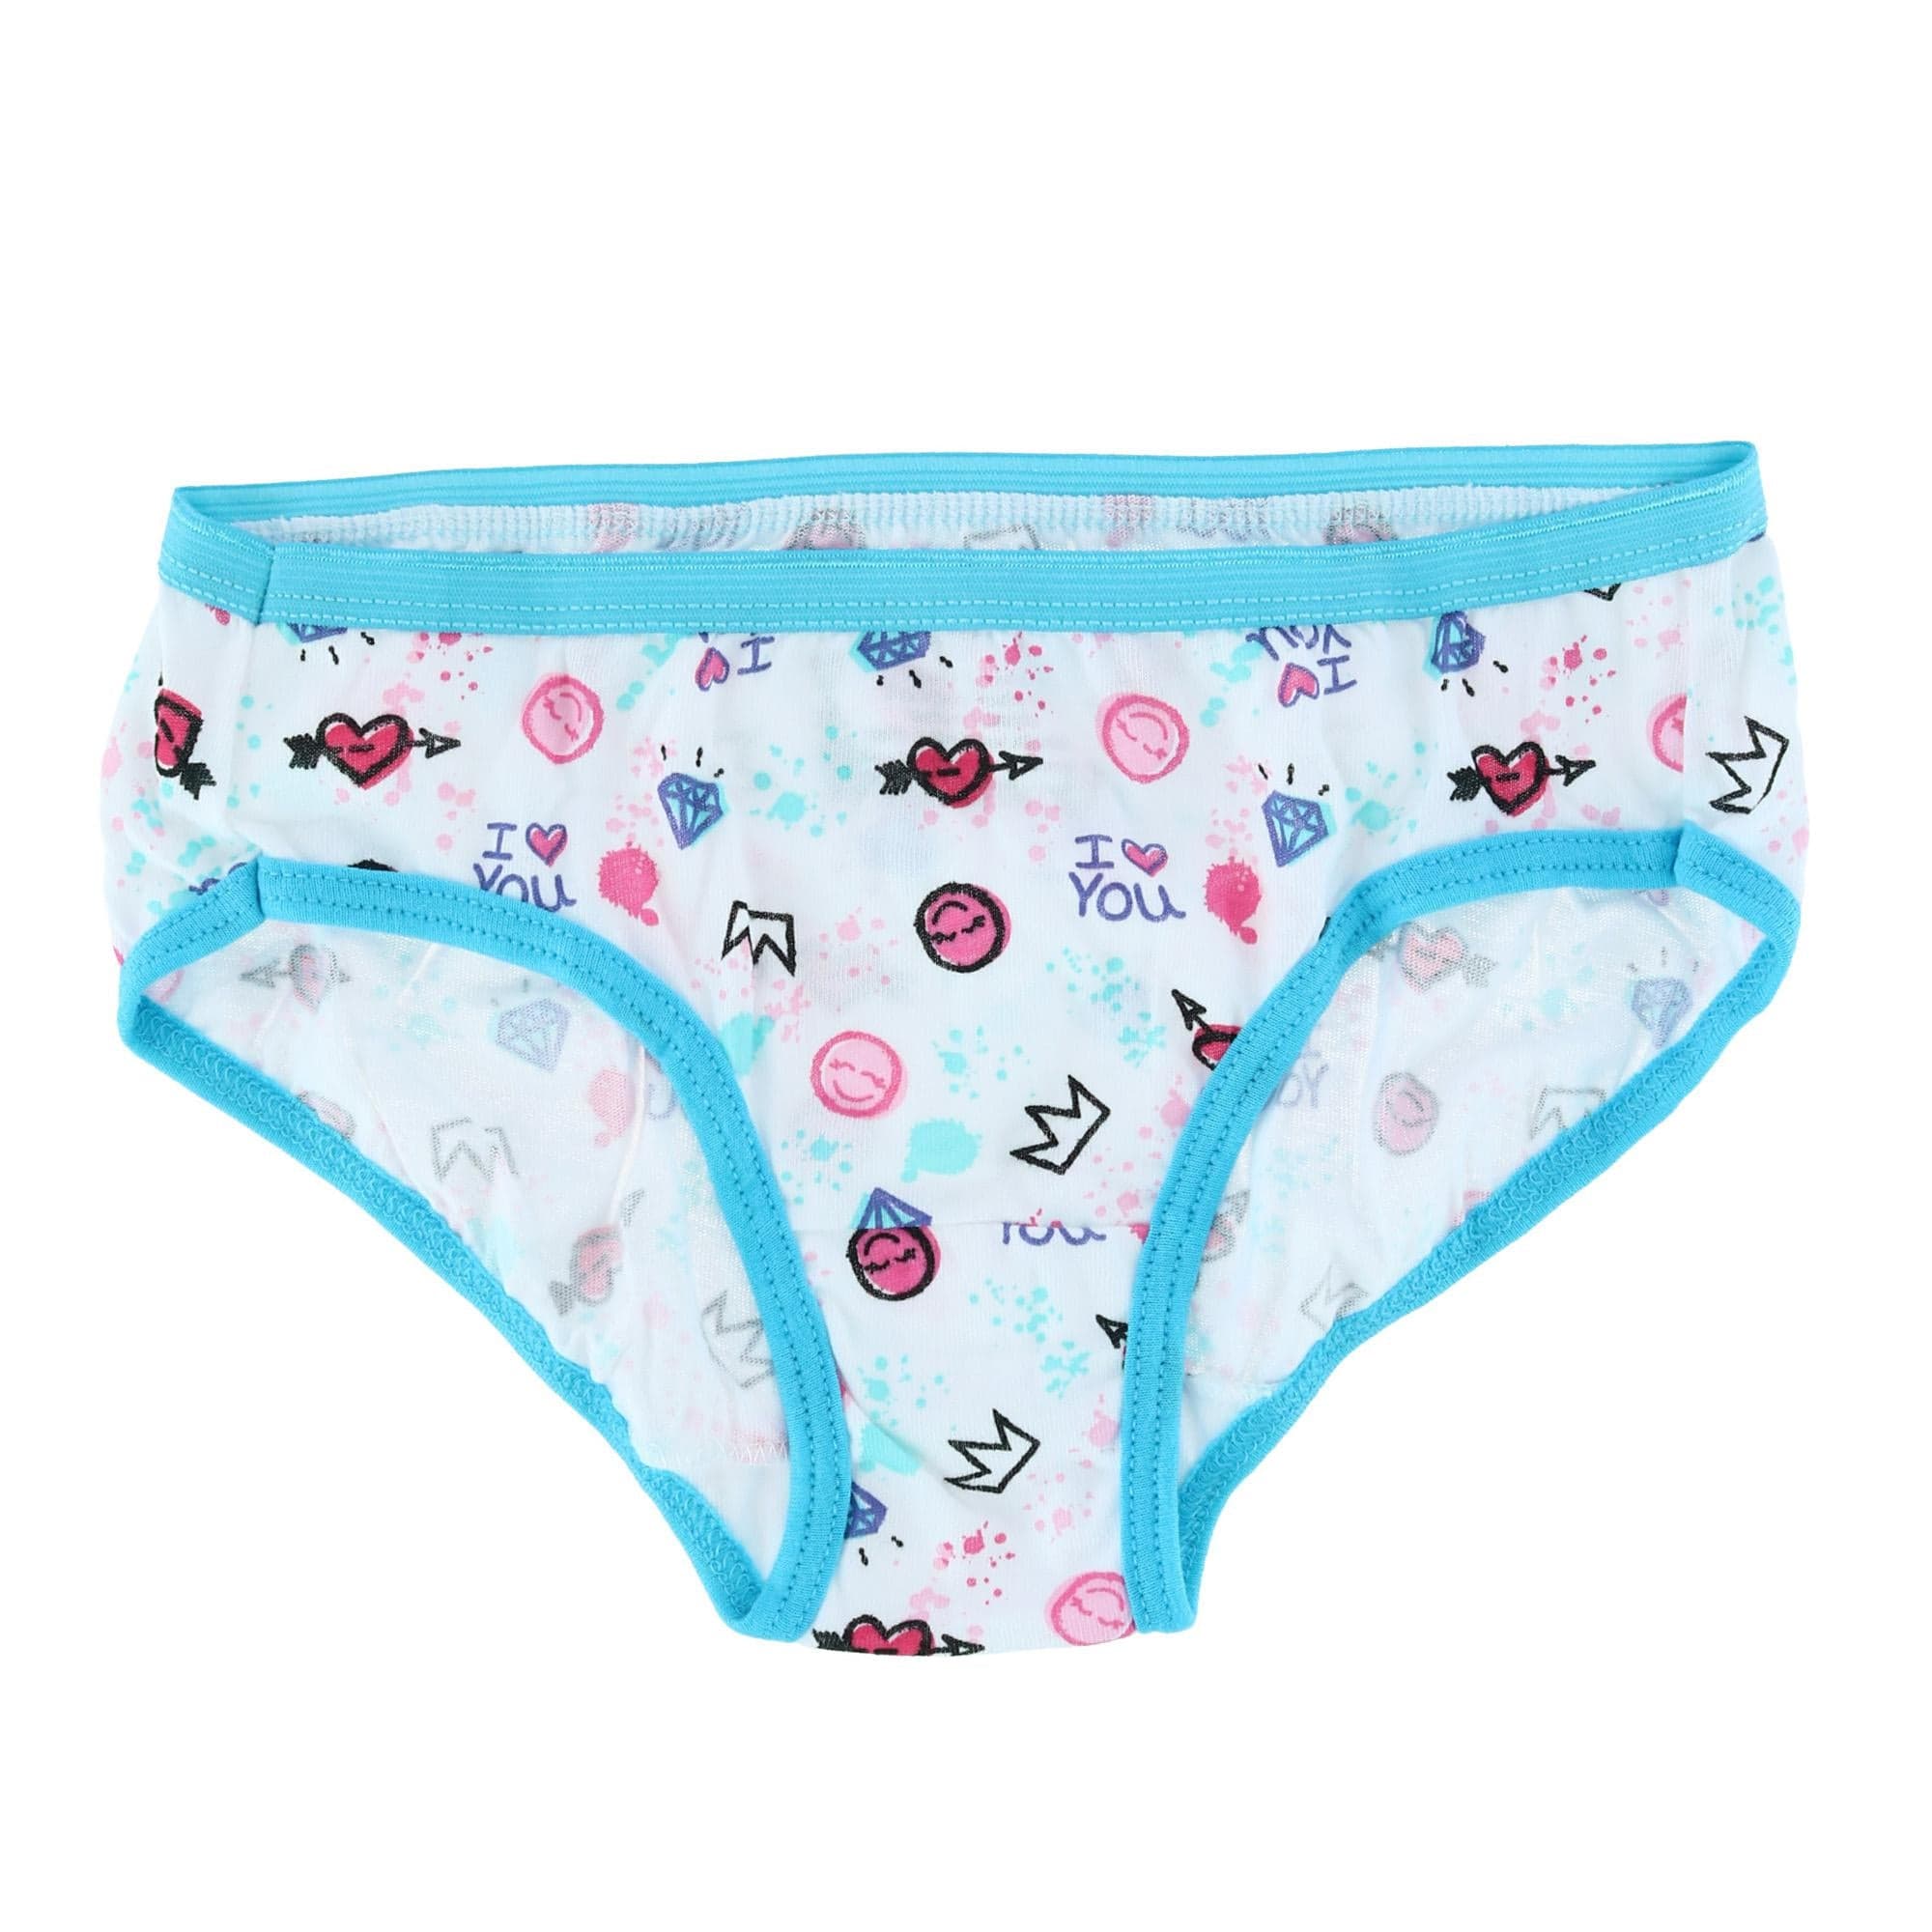 Hanes Girls Toddler 10-pack Hipster Panties